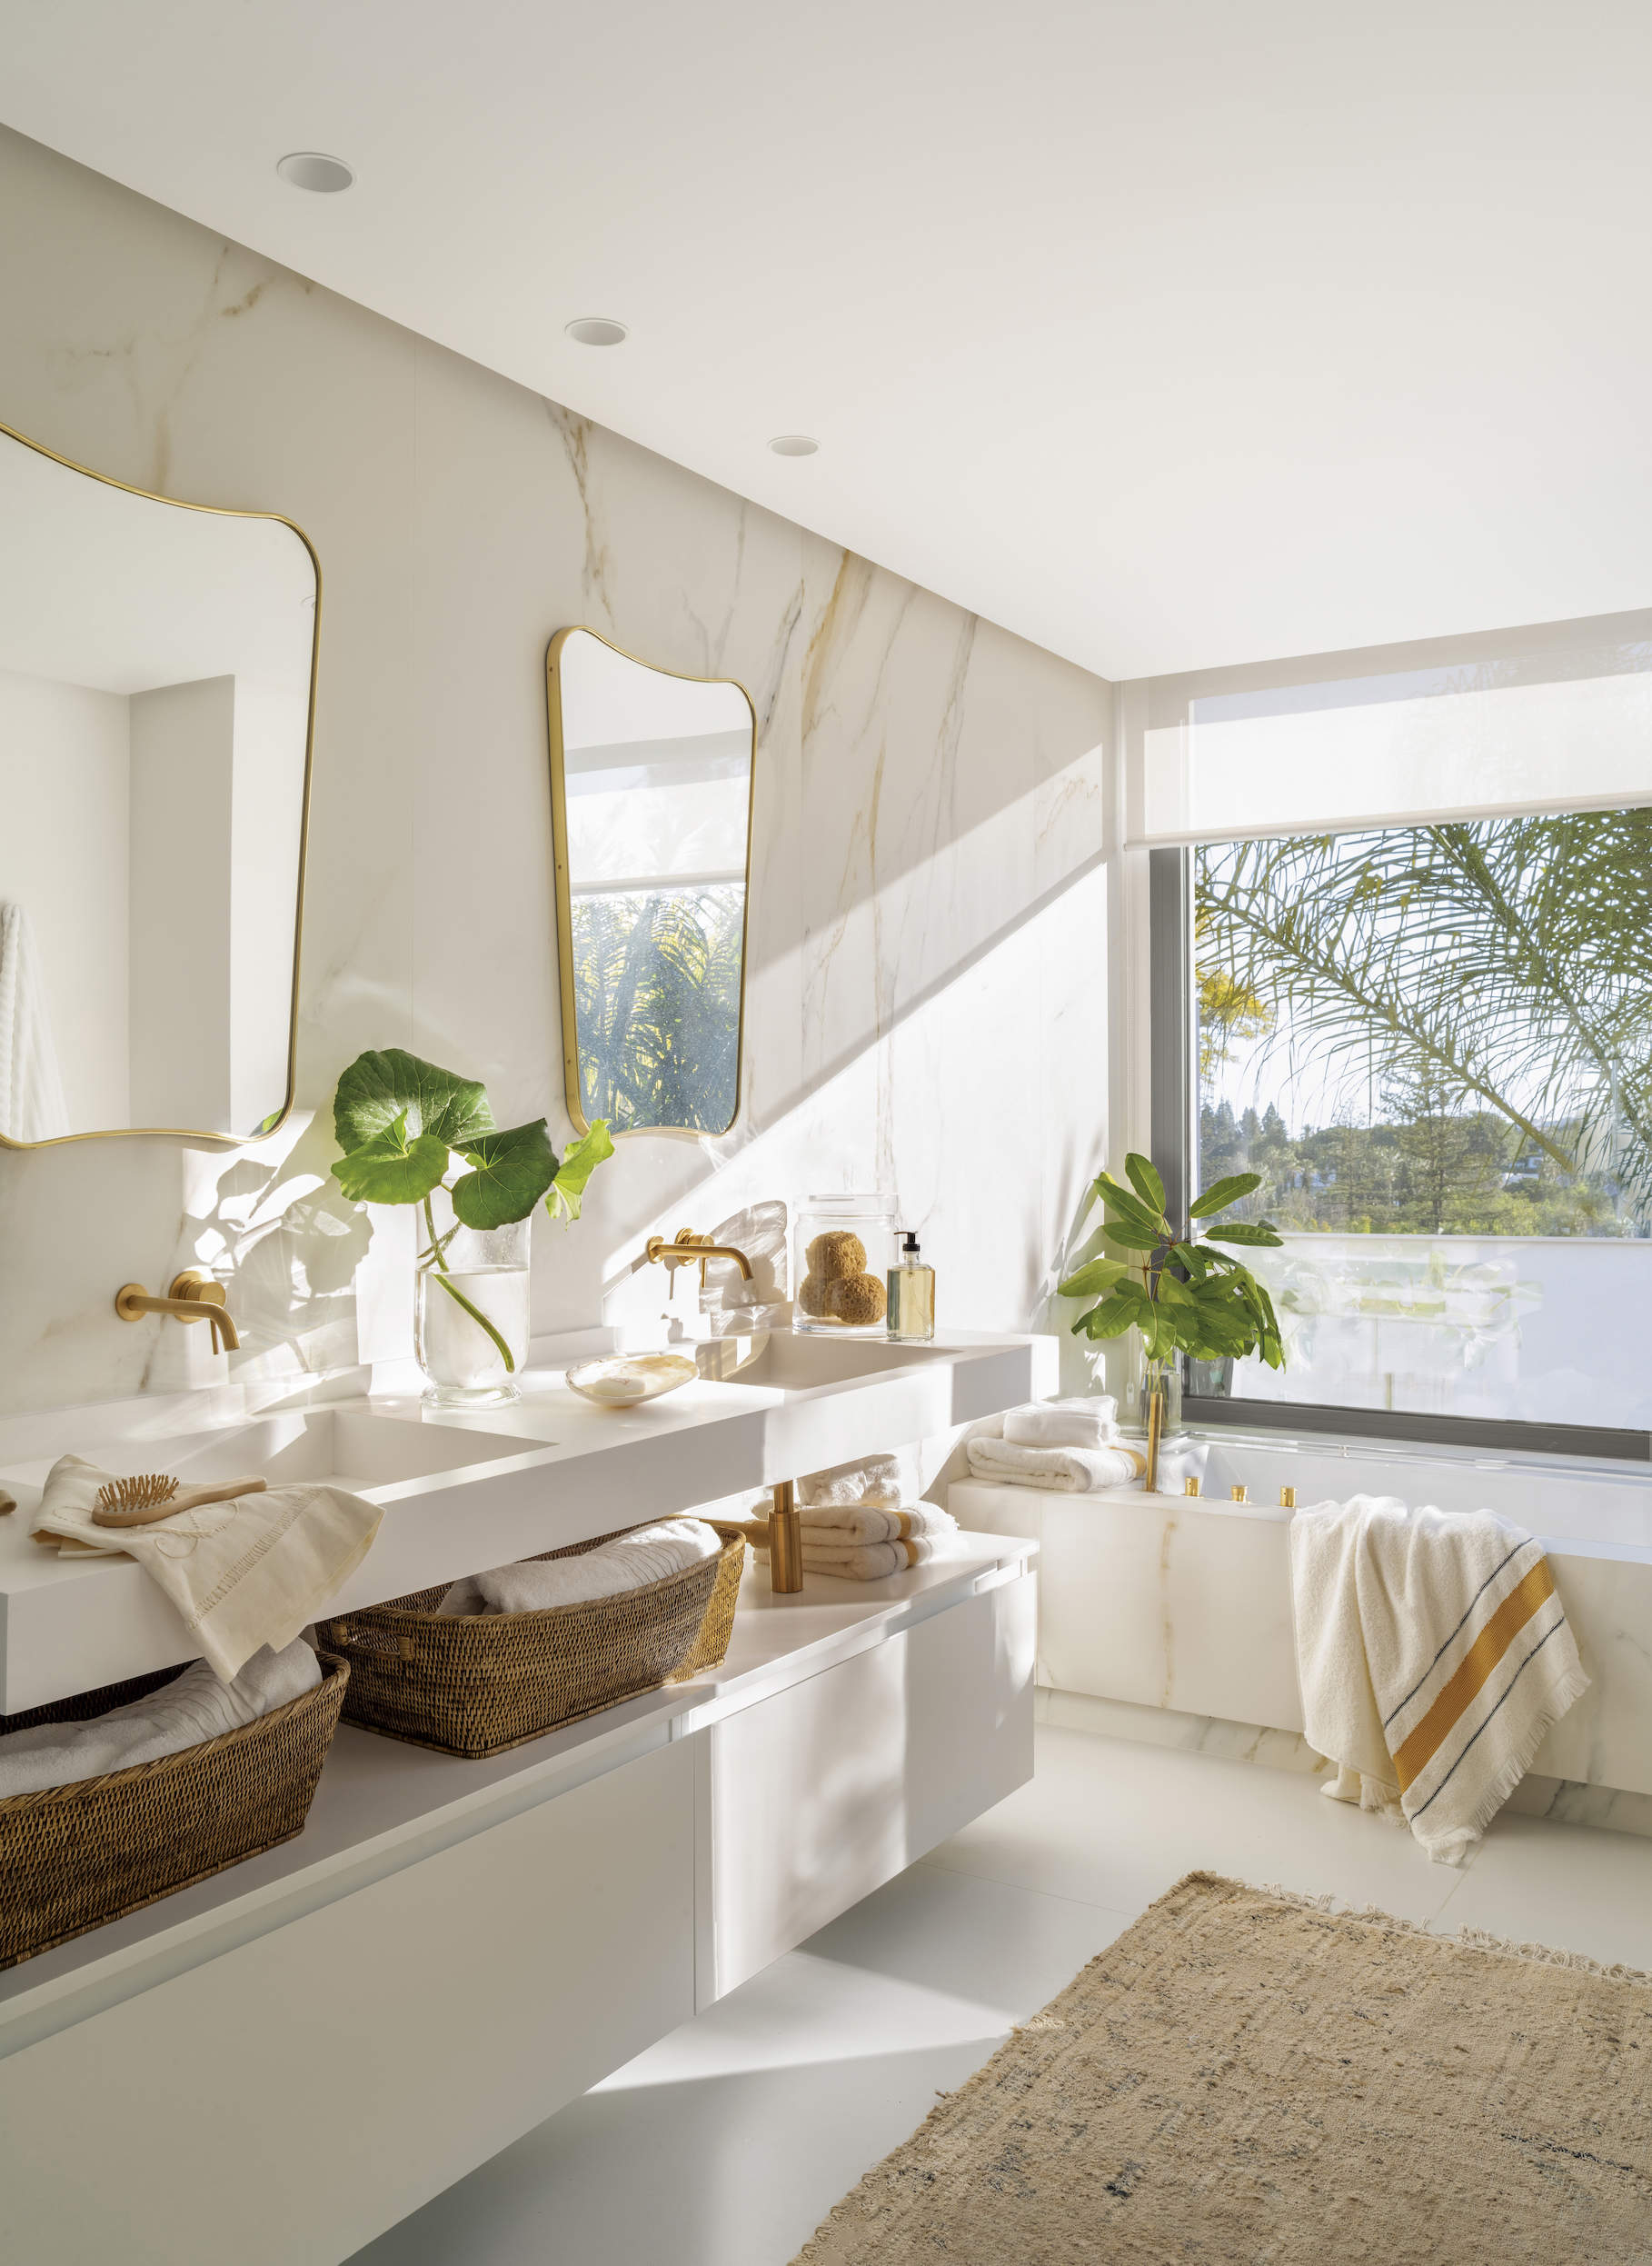 Baño moderno con mueble blanco y paredes de mármol.